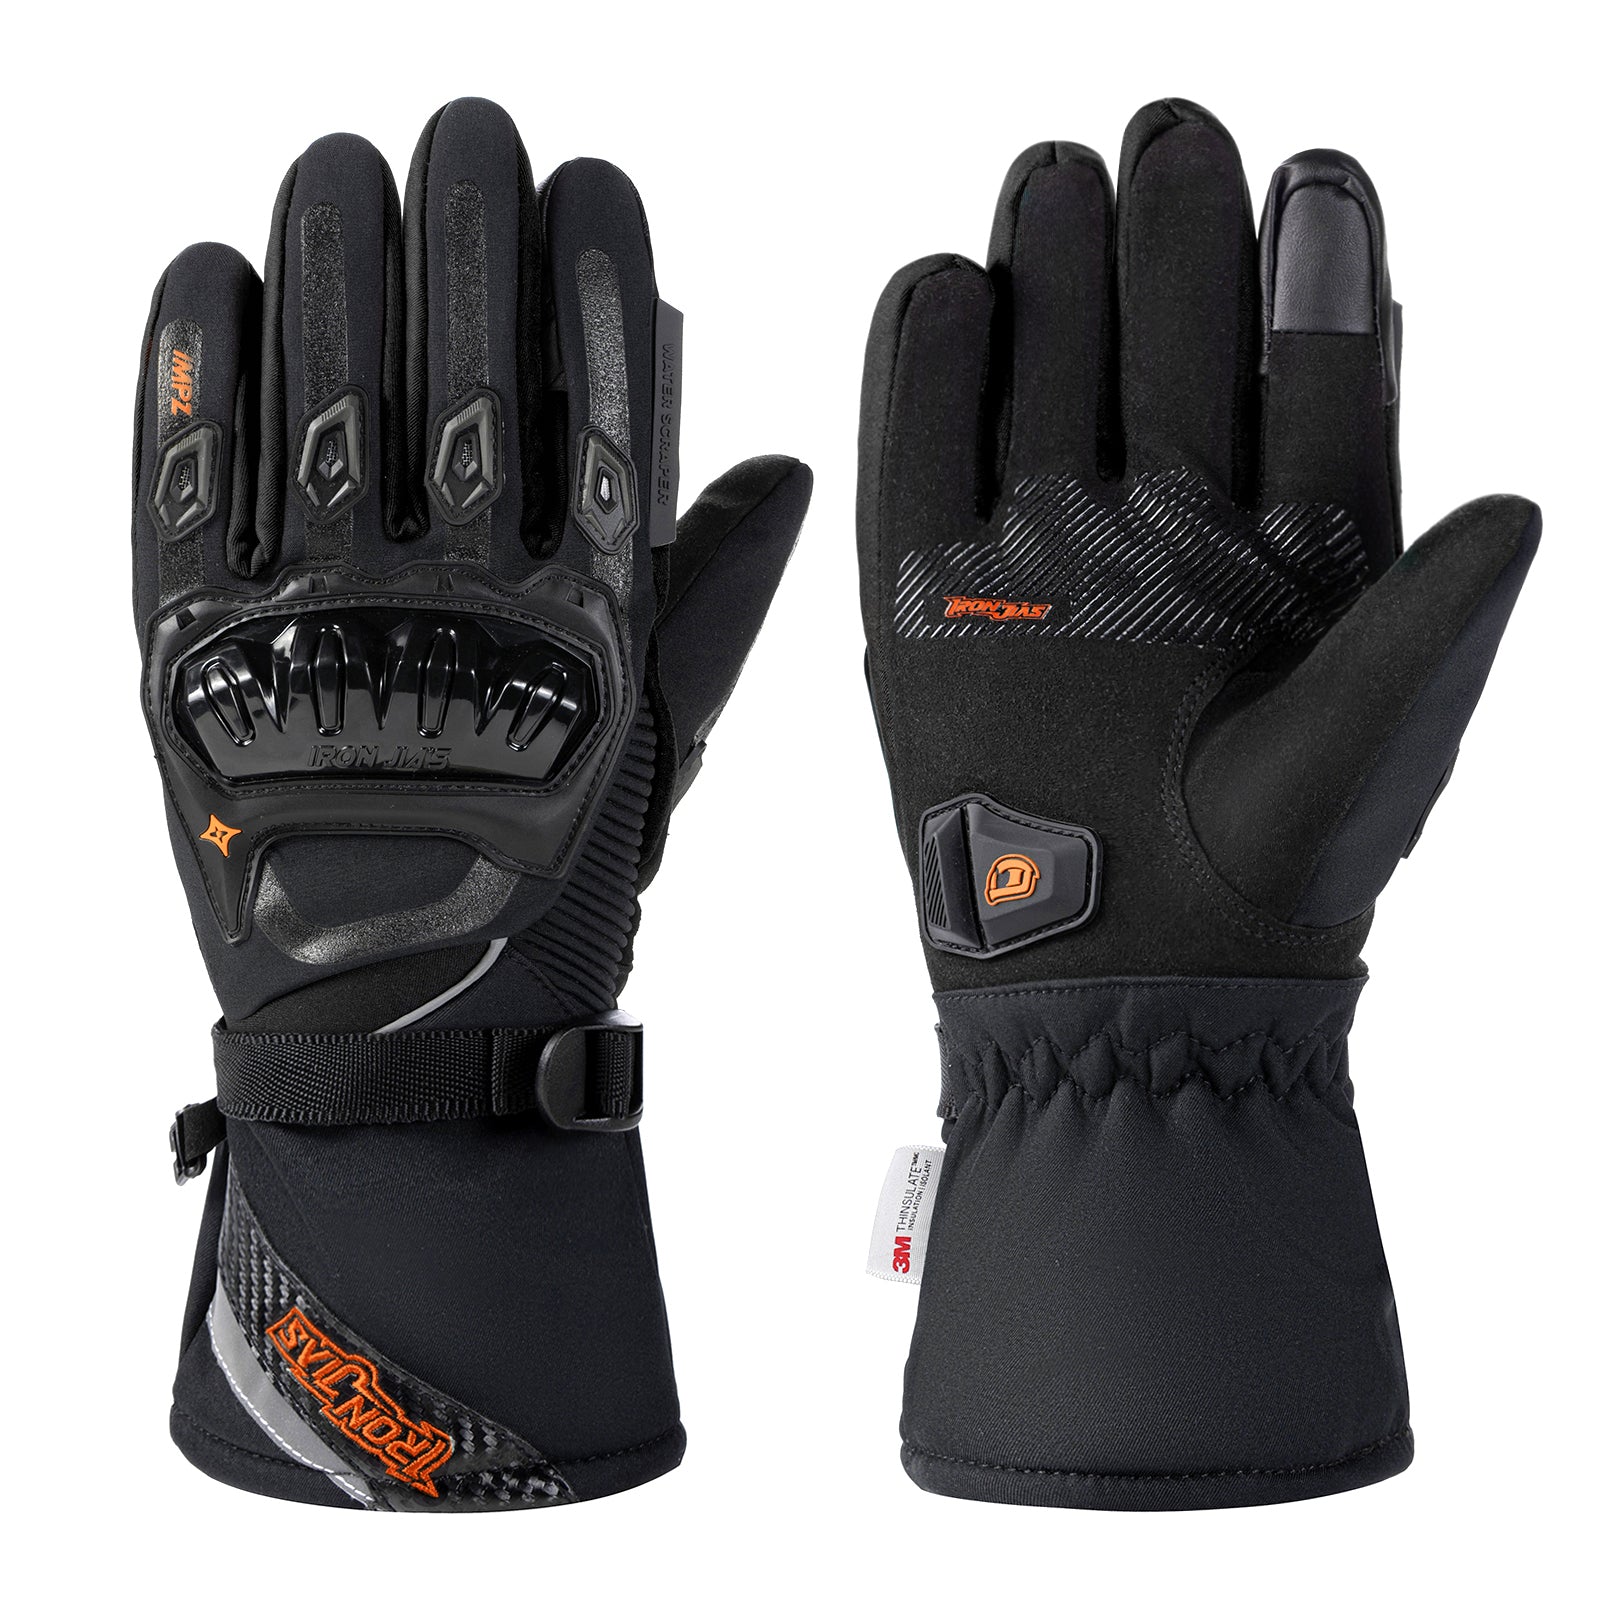 Black Waterproof Winter Motorcycle Gloves